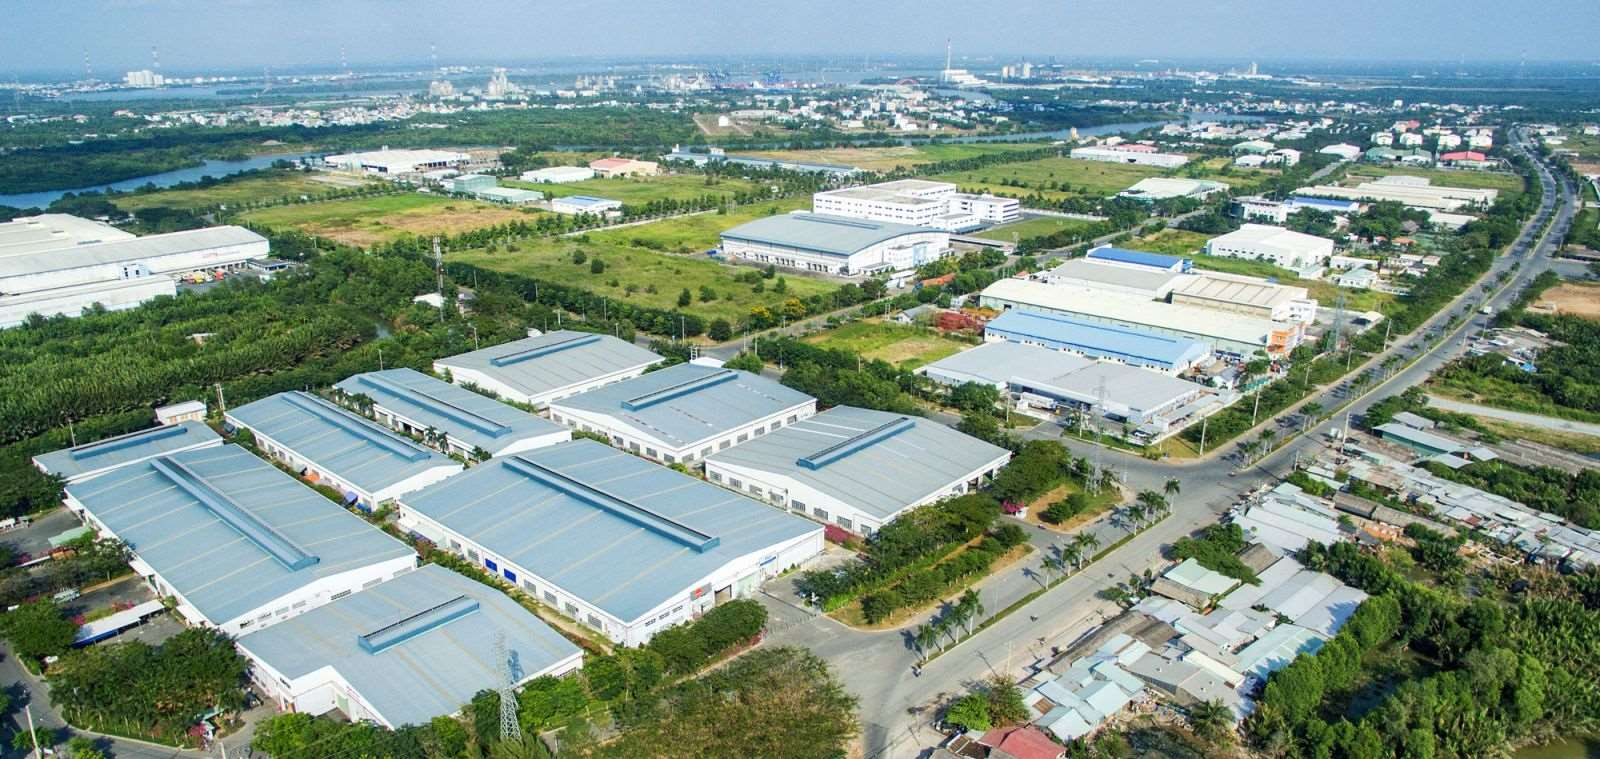 Đà Nẵng là nơi tập trung hàng loạt các khu công nghiệp lớn nhỏ